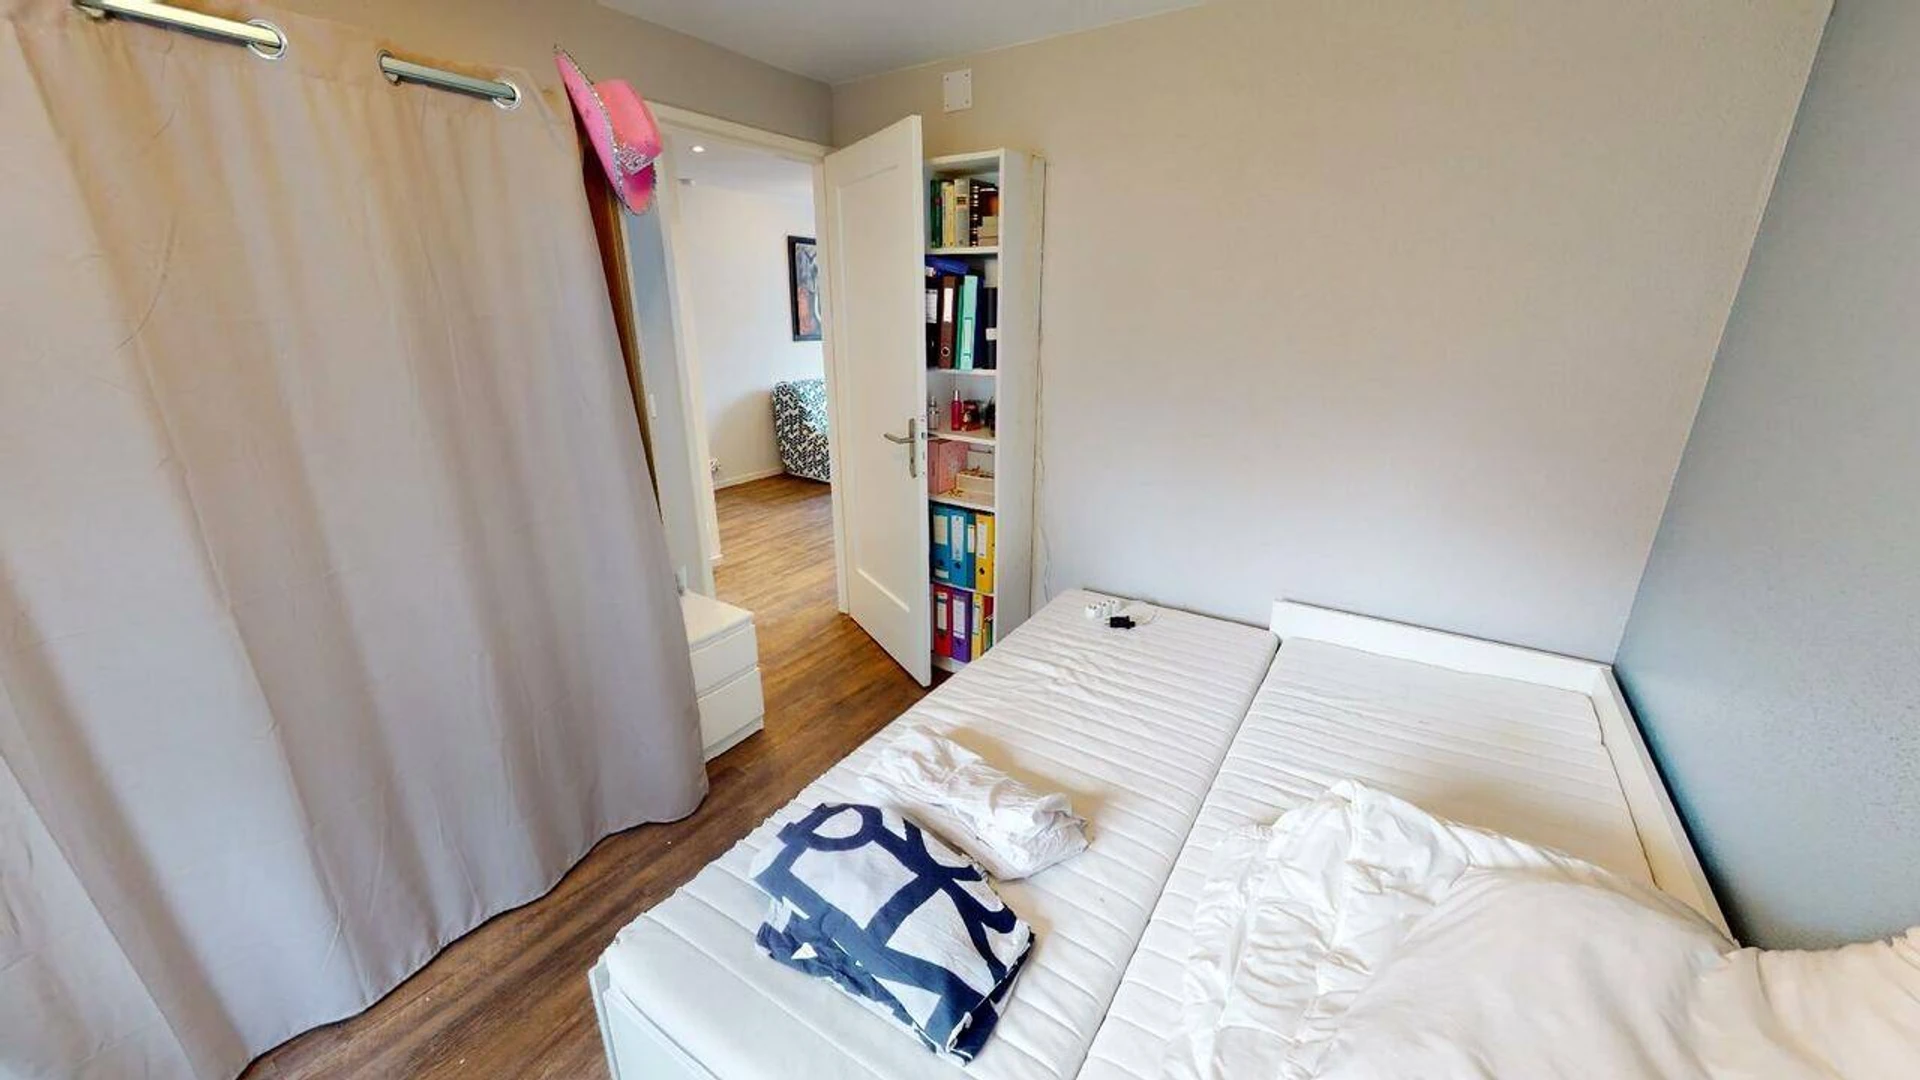 Mulhouse de çift kişilik yataklı kiralık oda